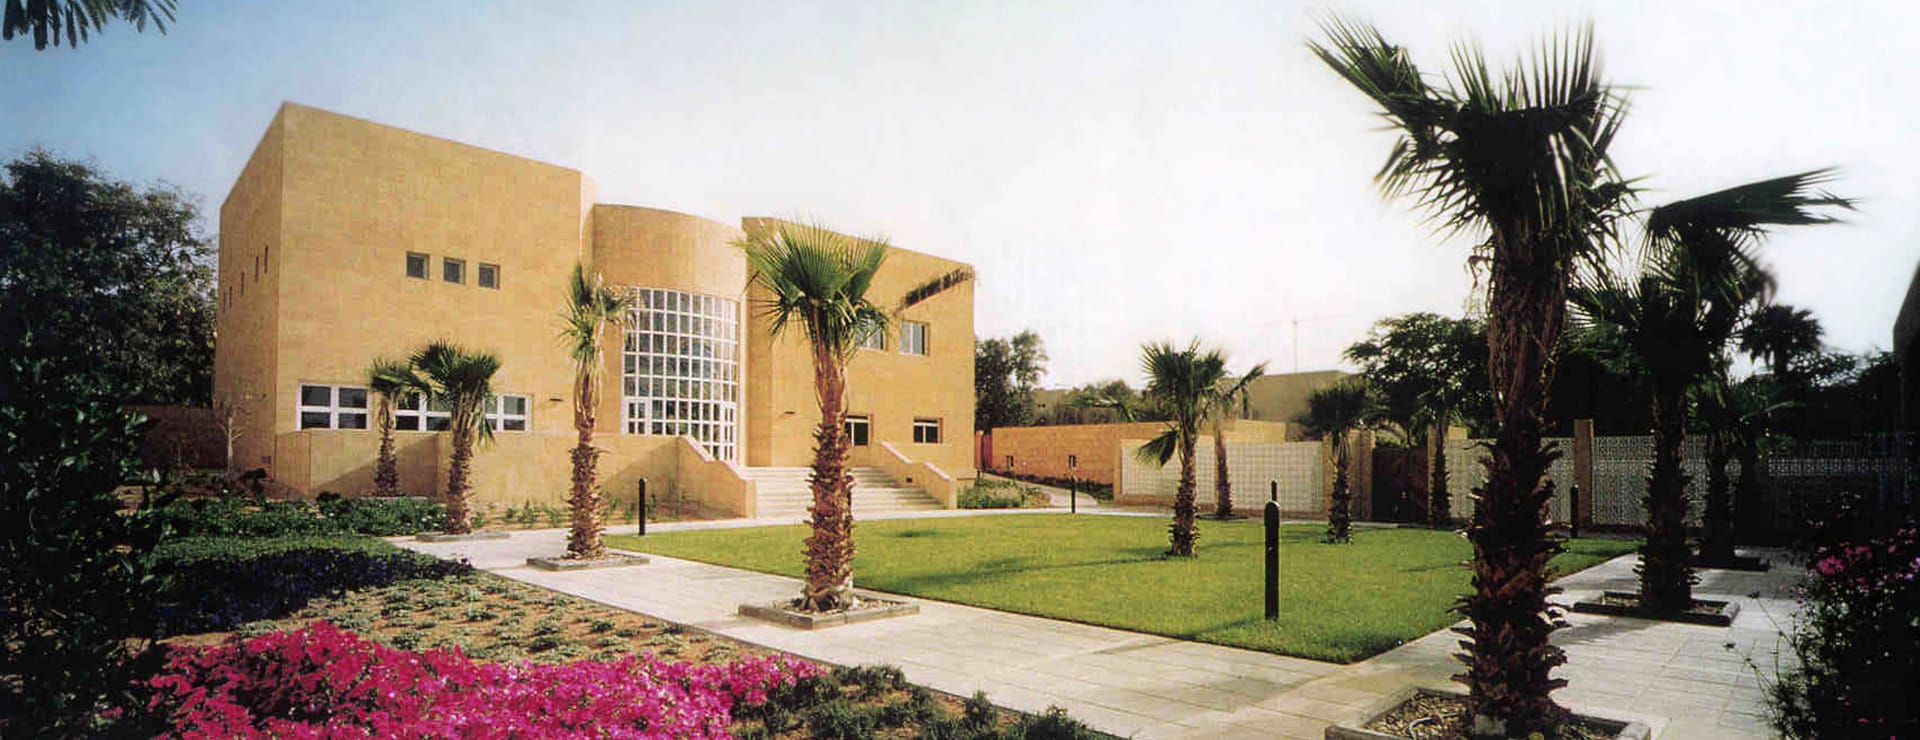 Austrian Embassy Riyadh Omrania